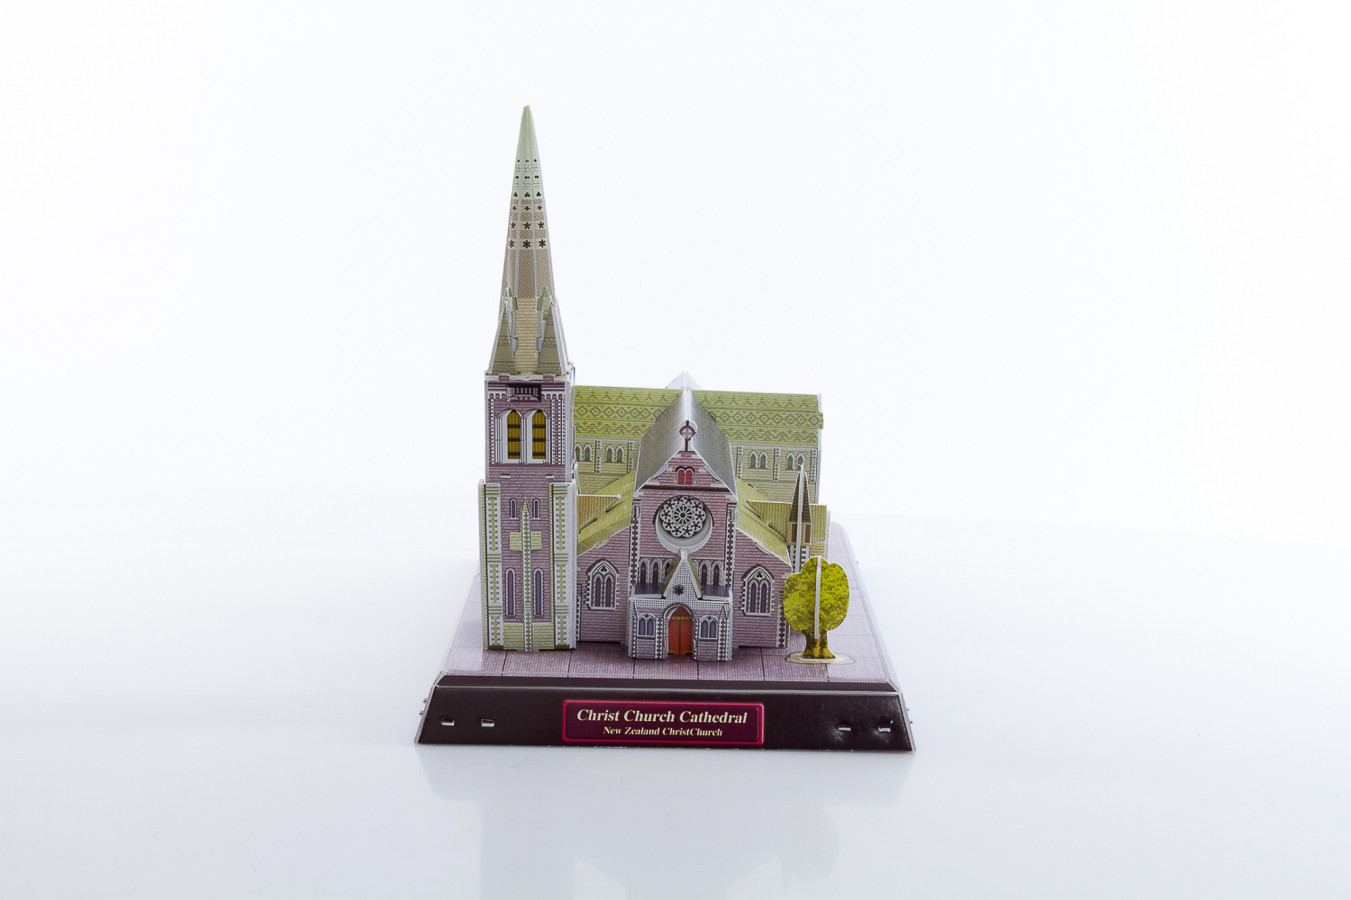 ImagenRompecabezas 3D en Caja: Christchurch Cathedral